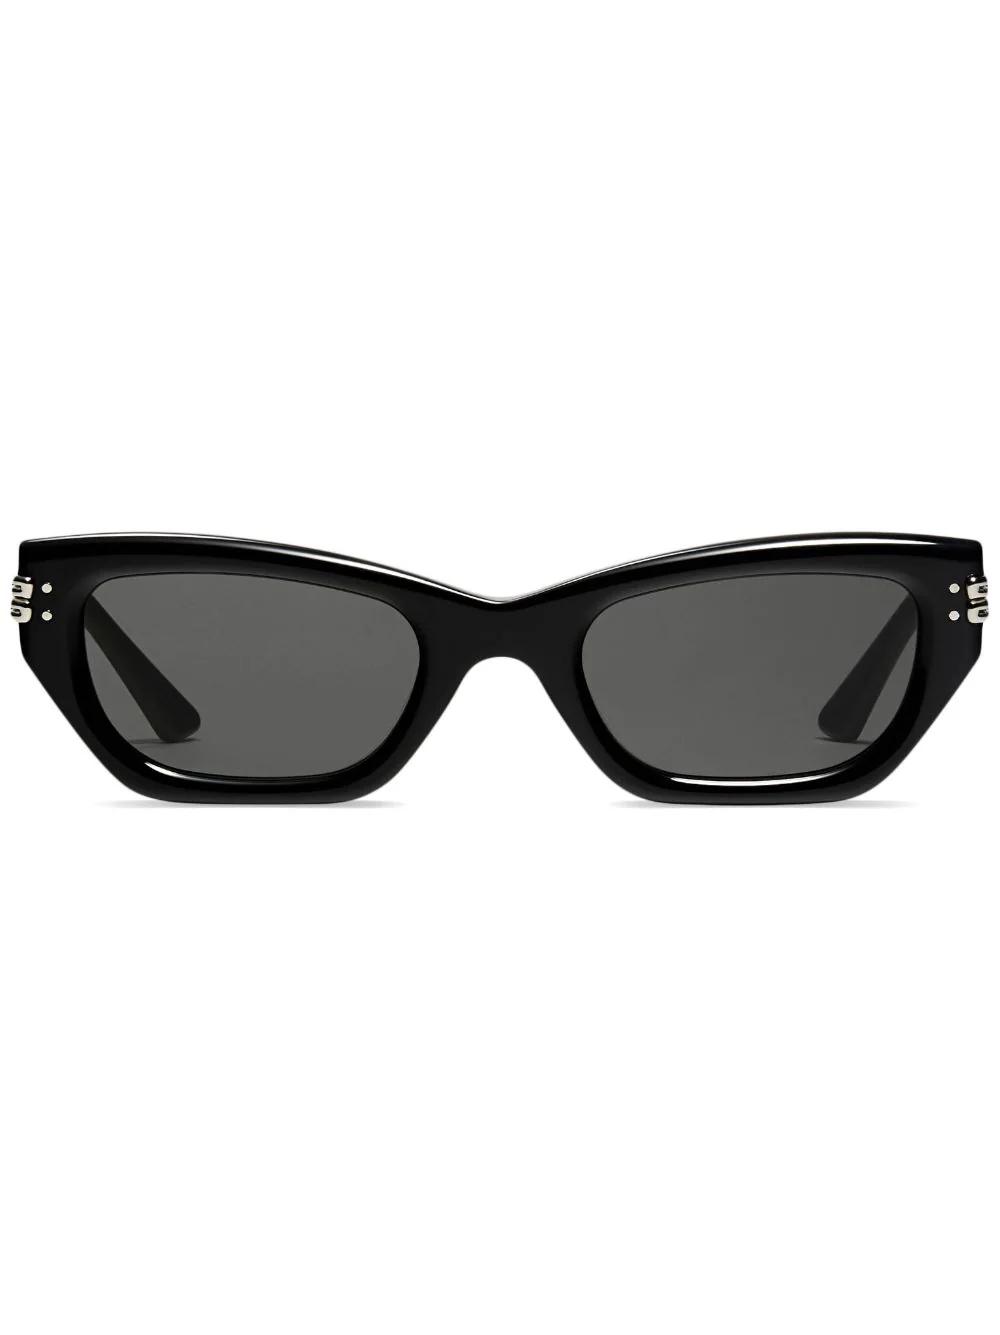 GENTLE MONSTER VIS VIVA 01 Sunglasses